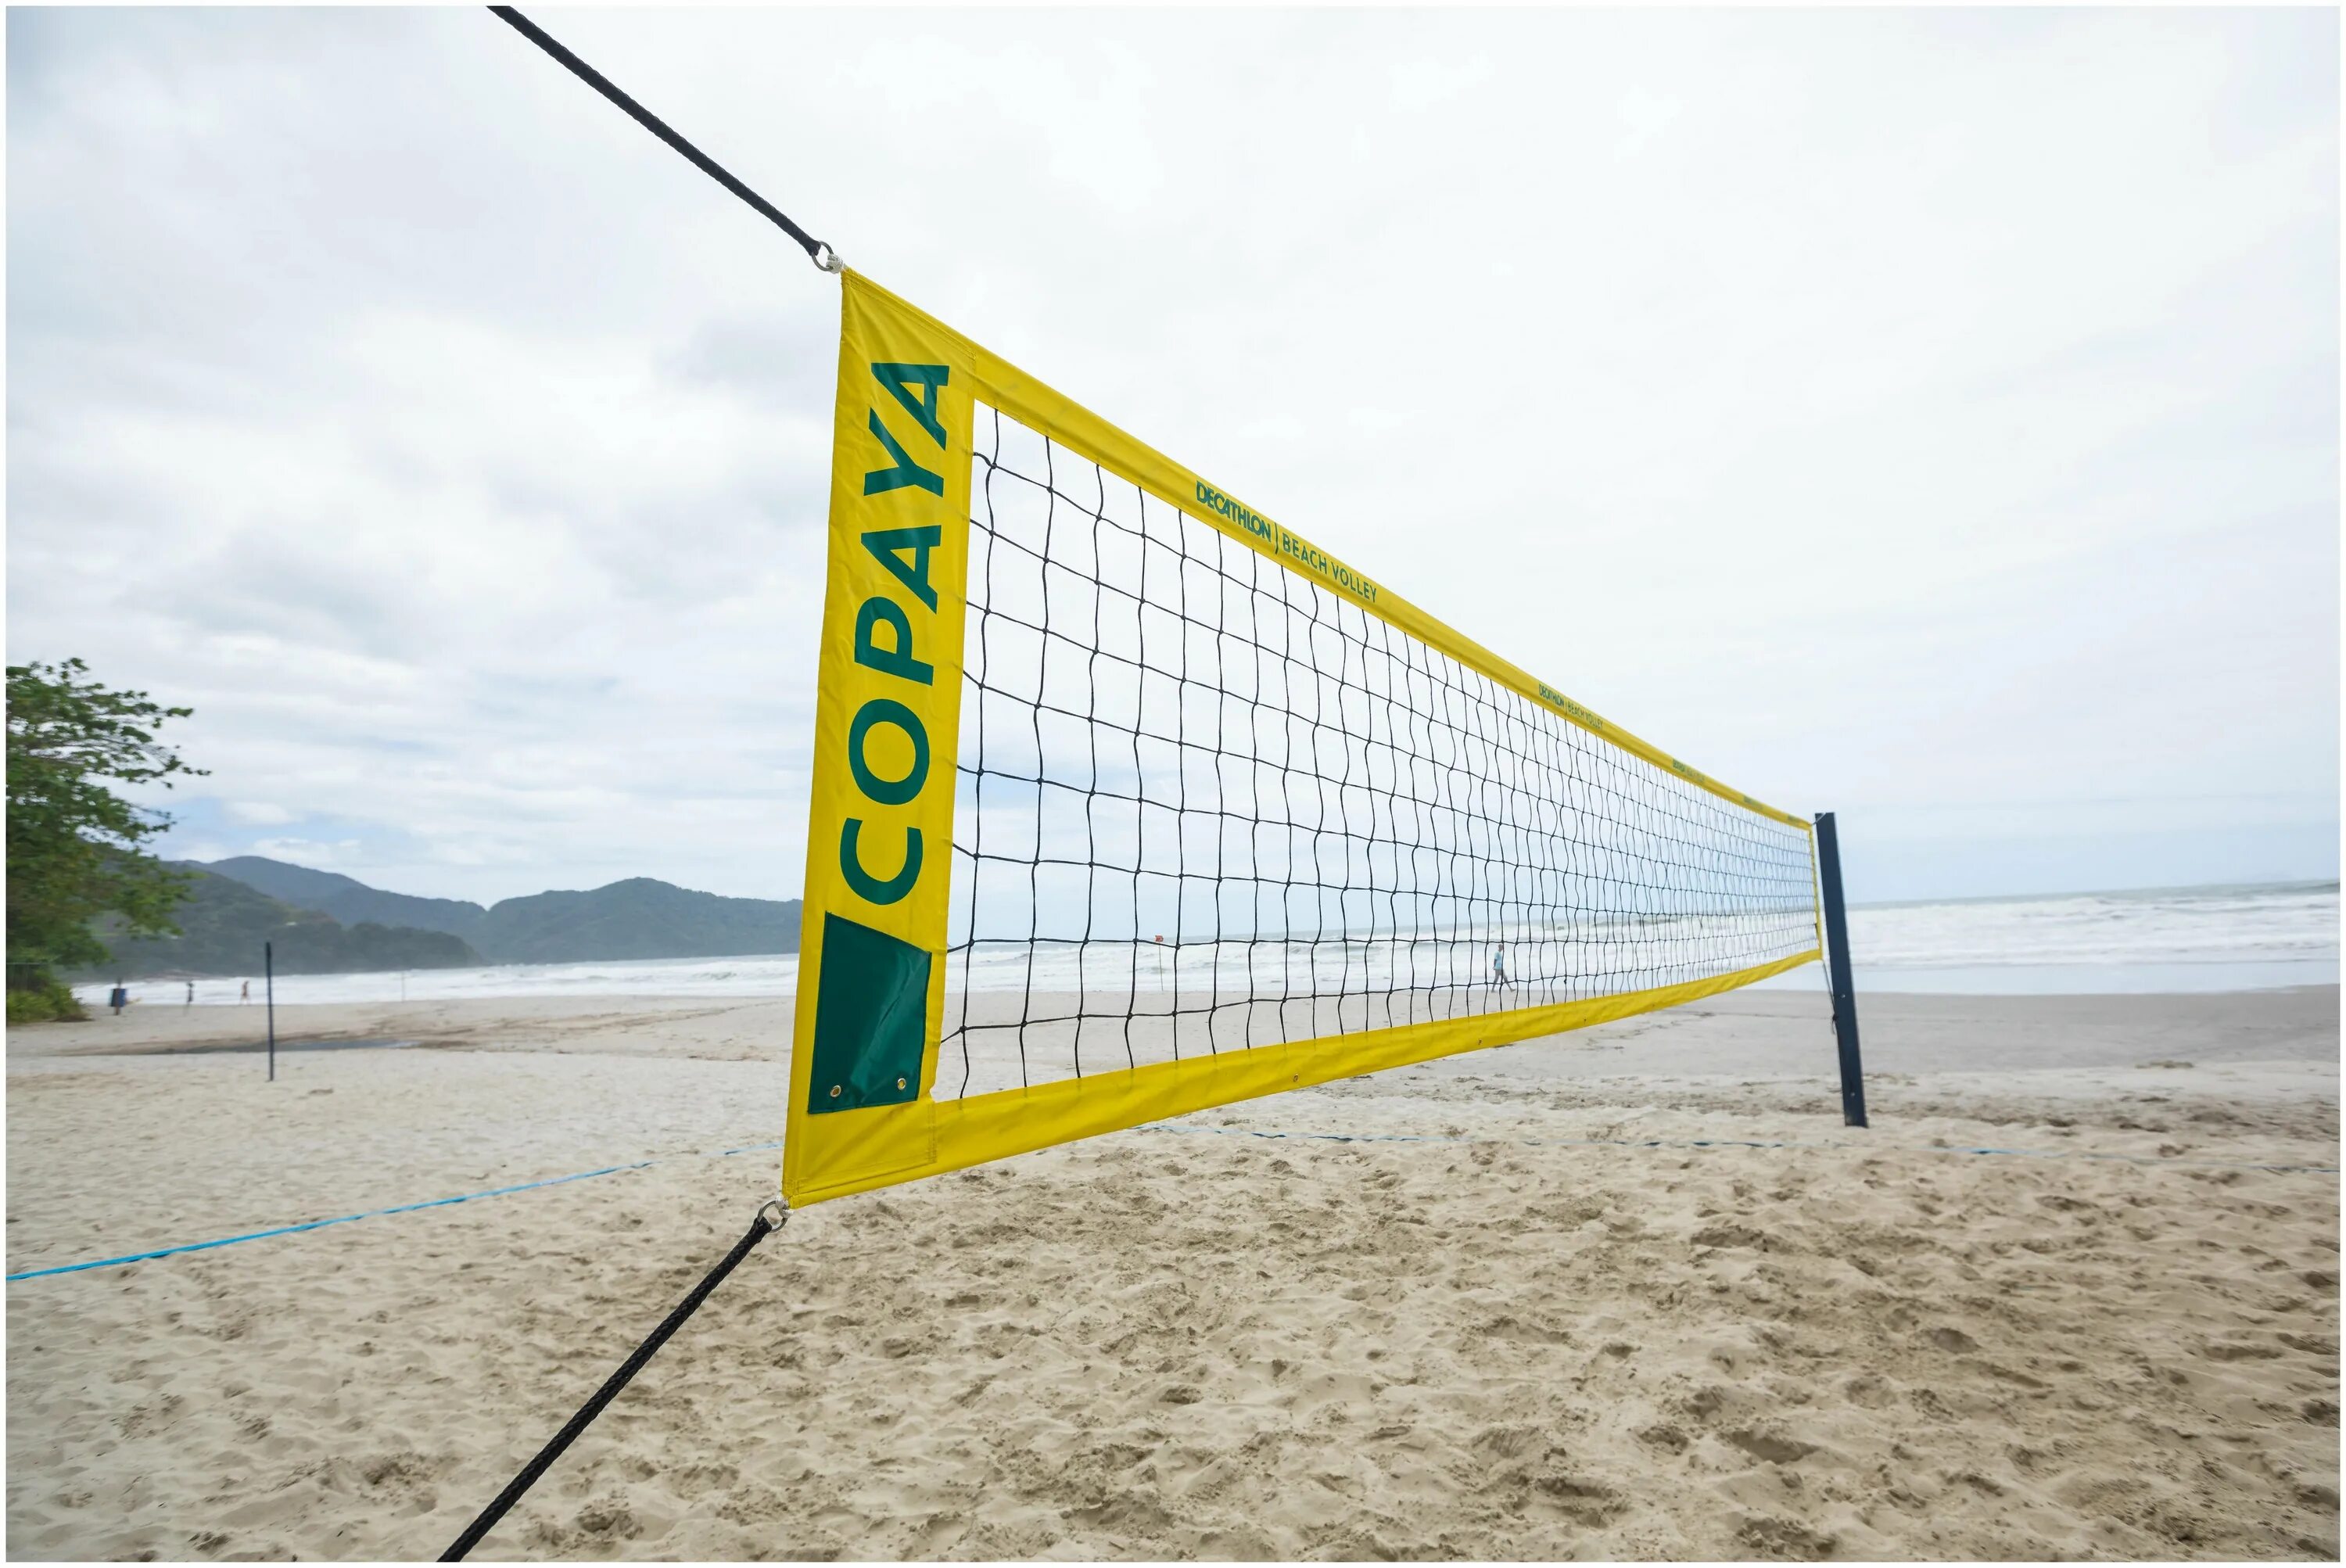 Copaya сетка волейбольная. Сетка для пляжного волейбола Декатлон. Bv900 Copaya комплект для пляжного волейбола. KIPSTA bv900 комплект для волейбола.